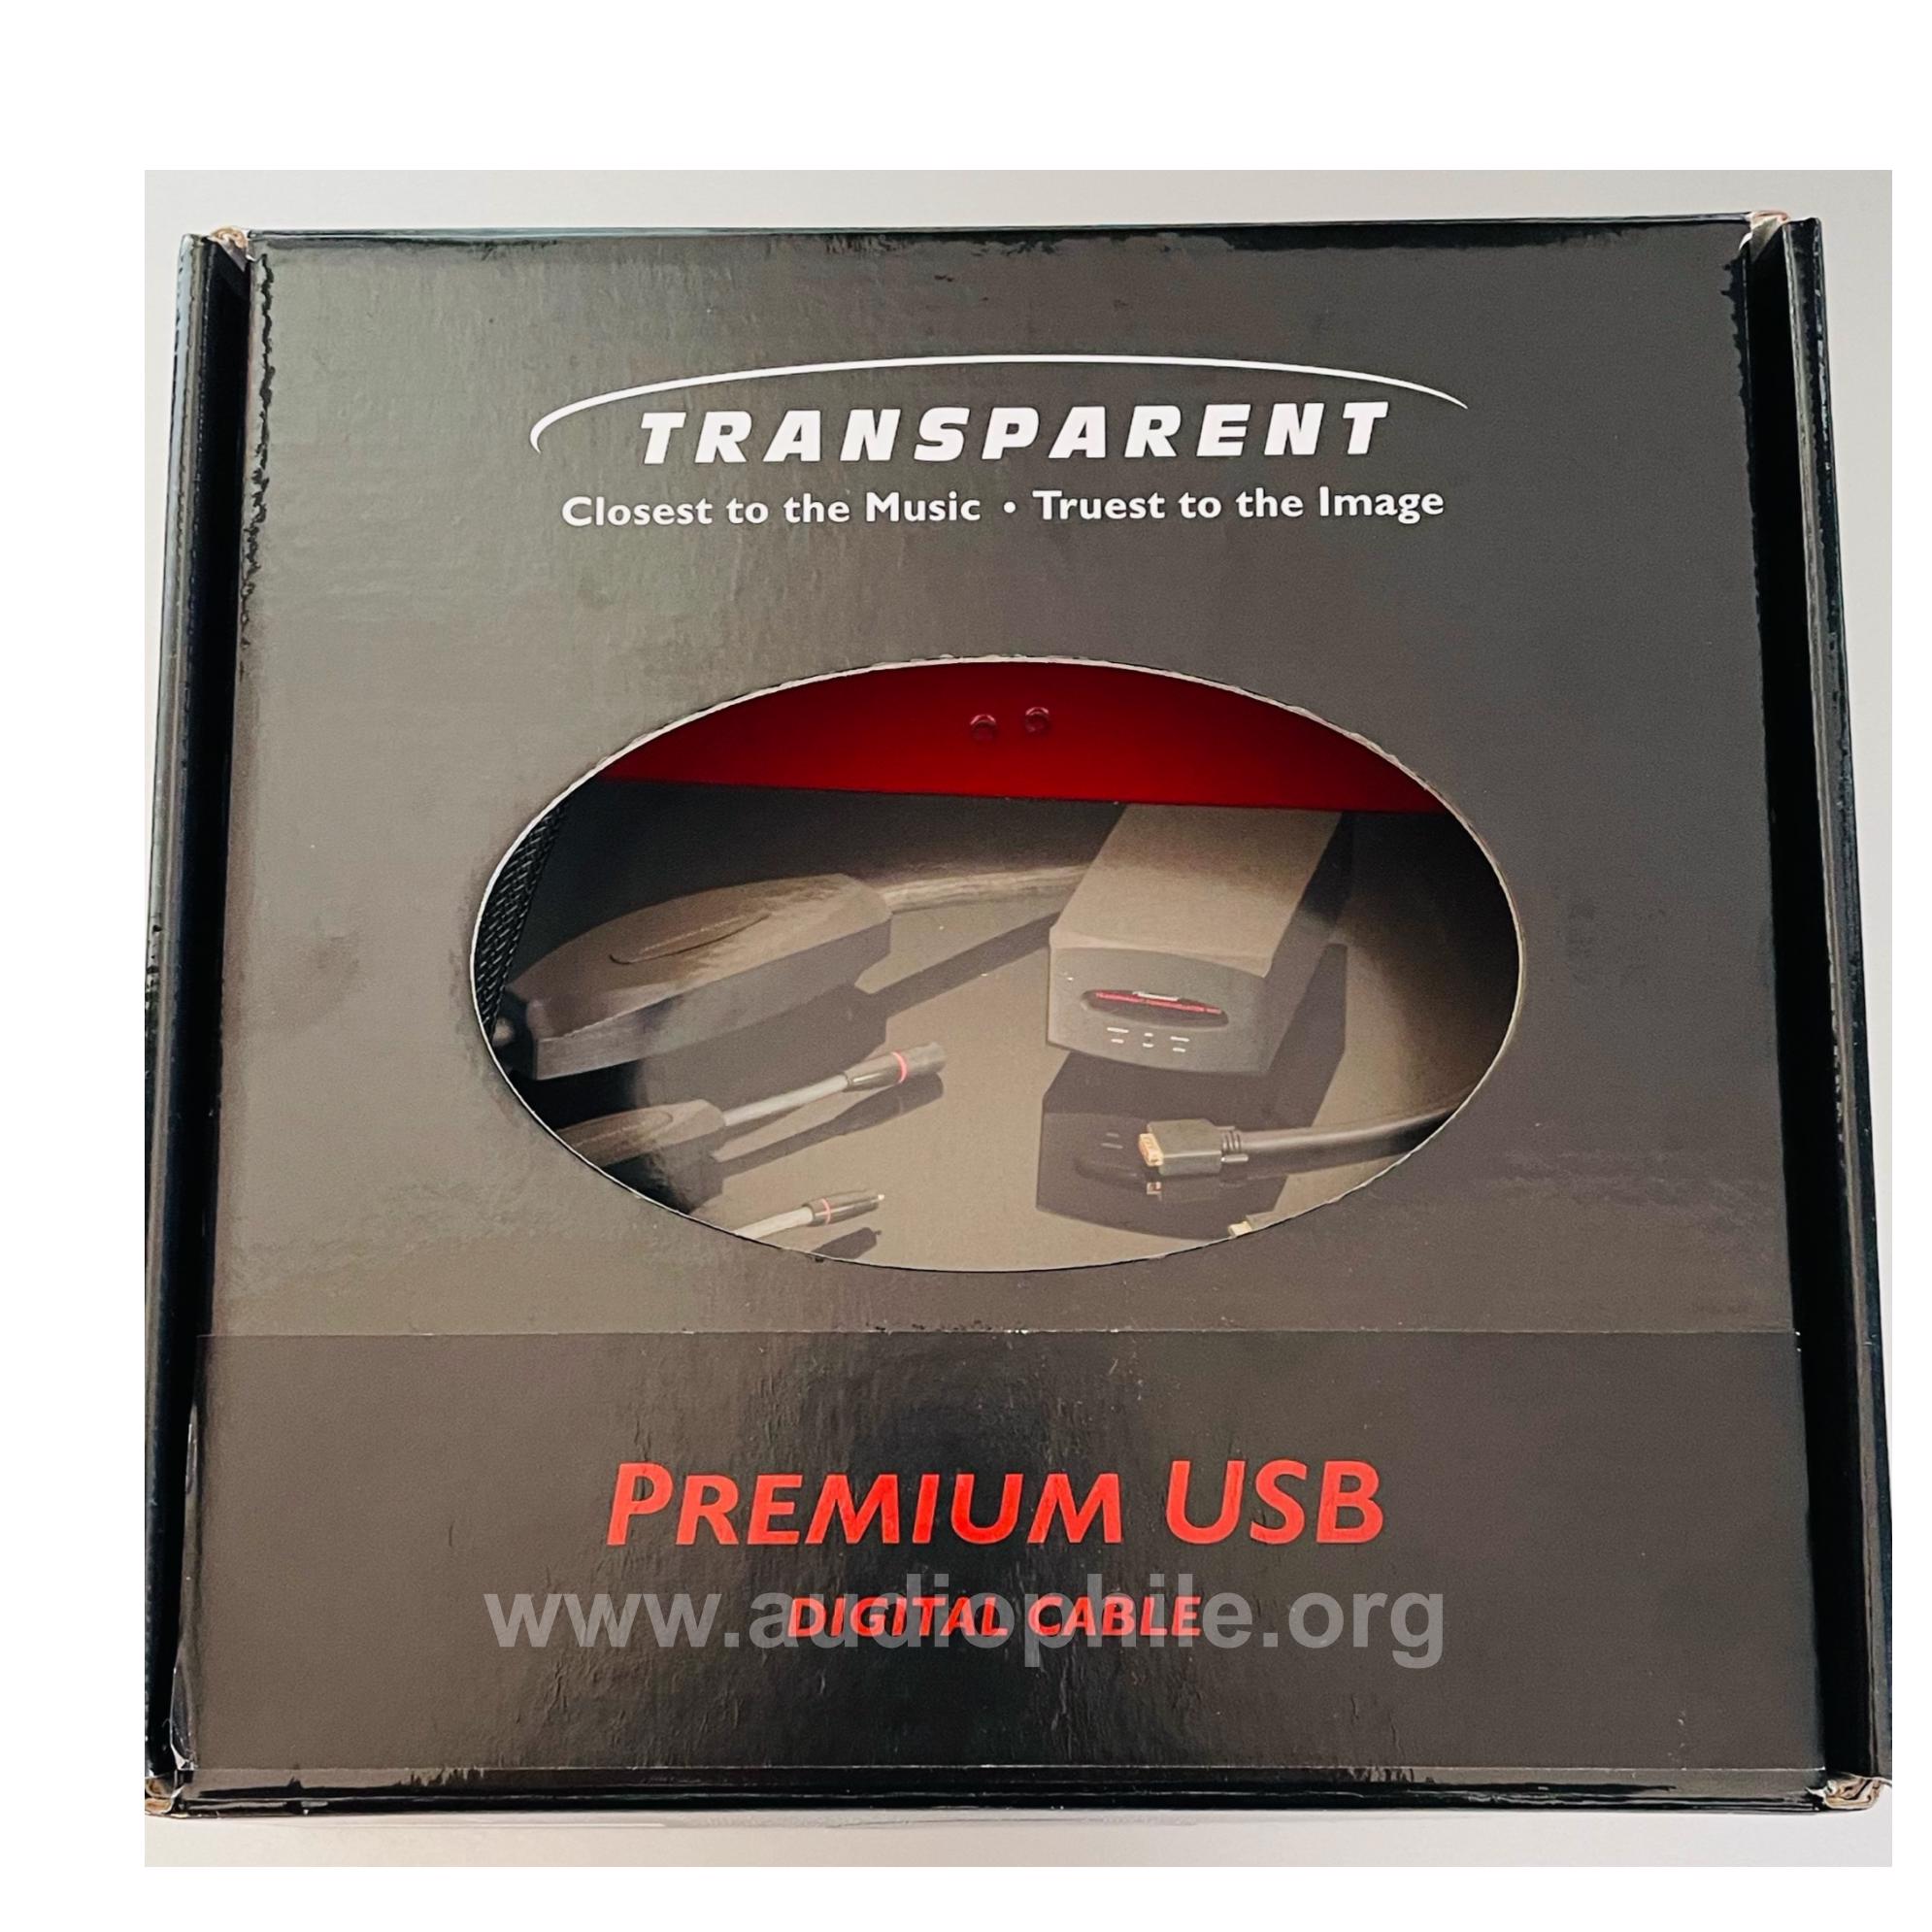 Transparent premium usb